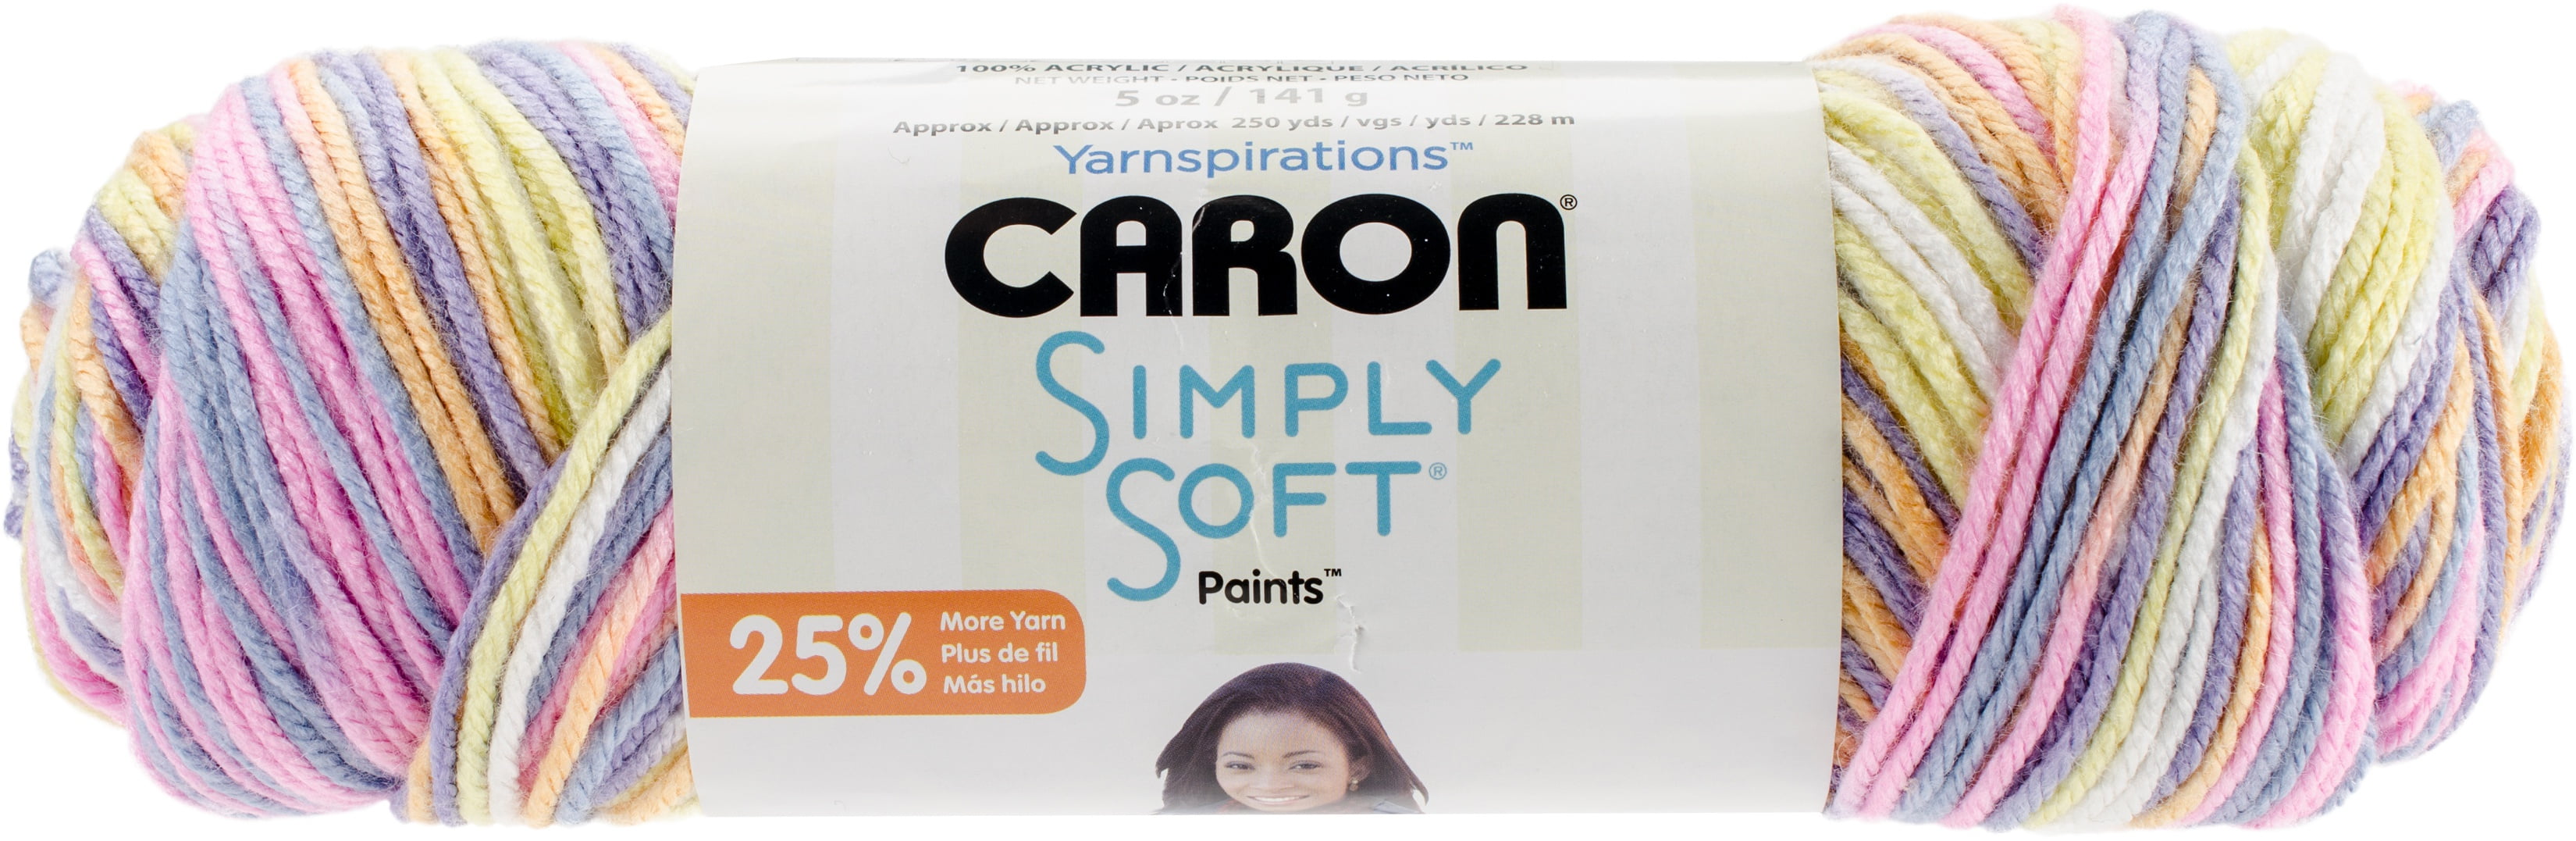 Caron X Pantone Dane Gray 8 L X 2.25 W X 2 D